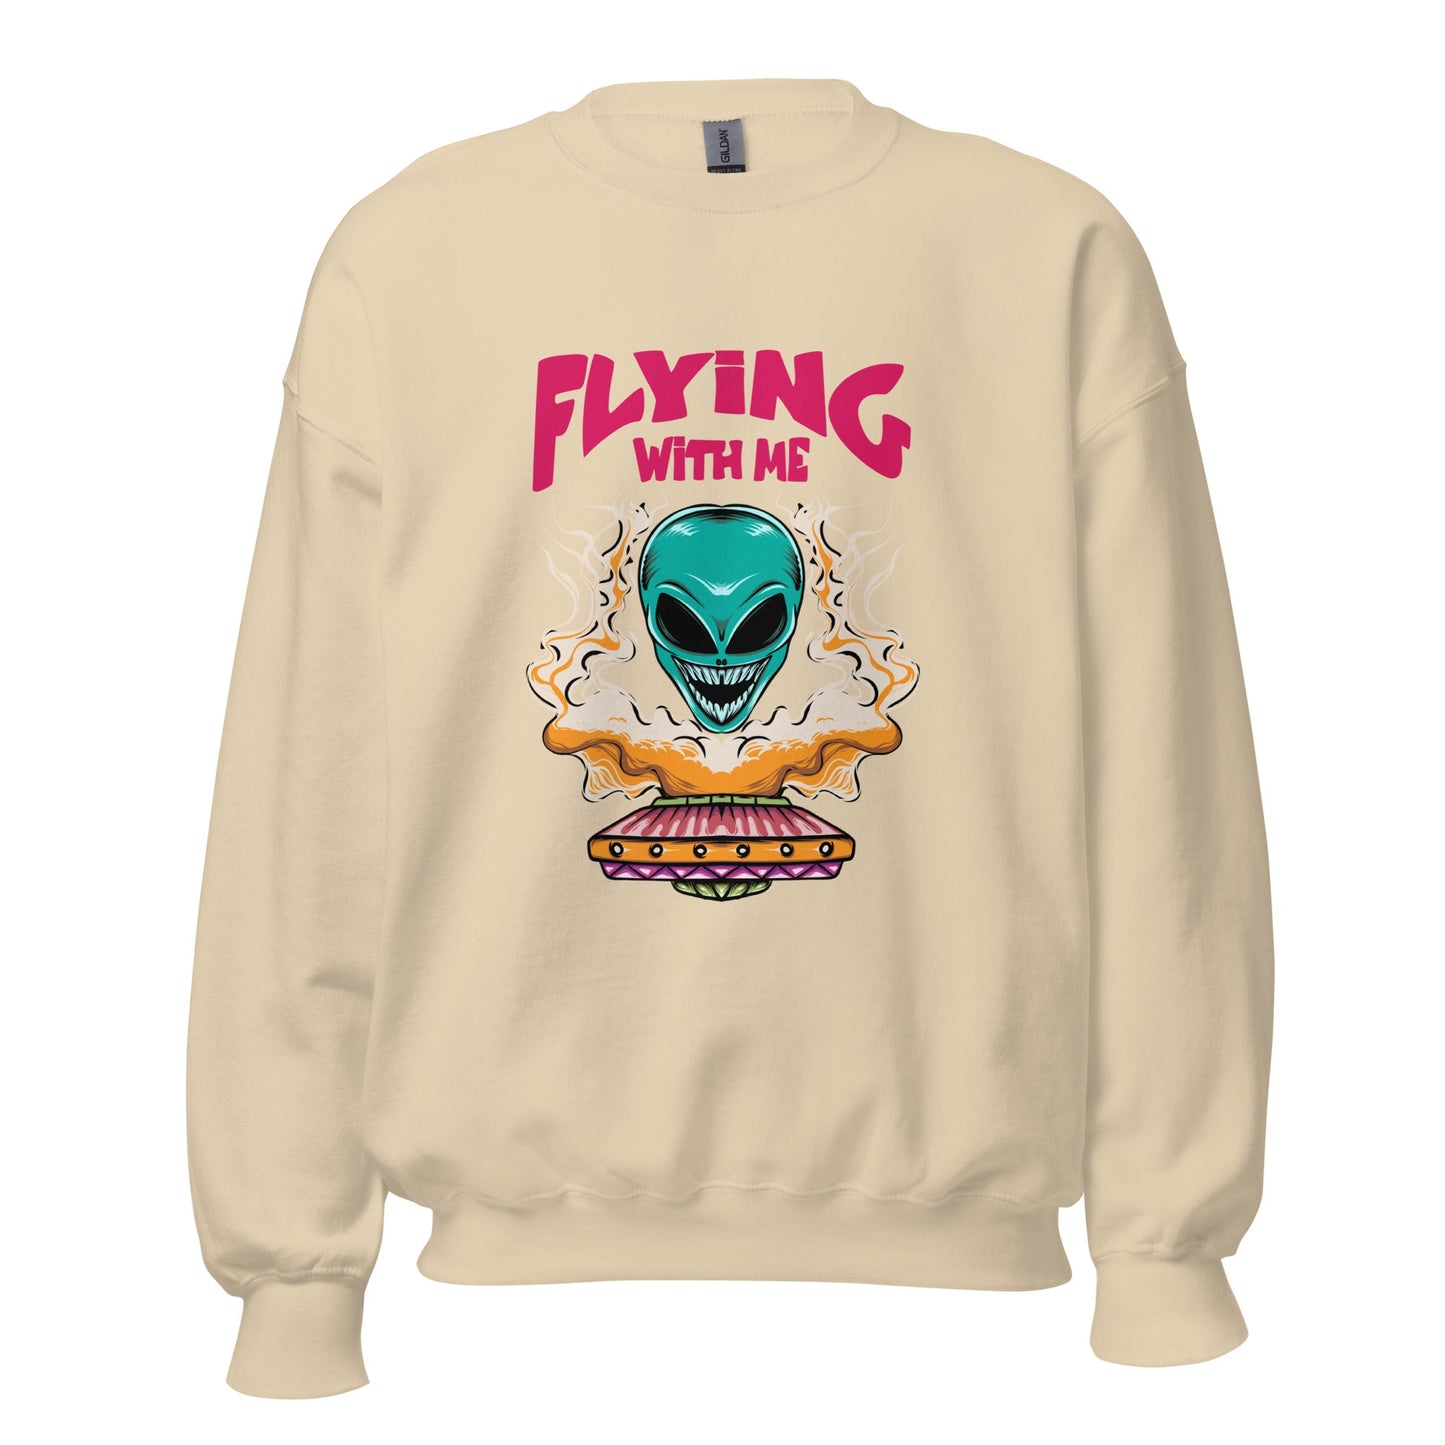 UFO Flying with Us Unisex Sweatshirt - Explore the Uncharted Skies